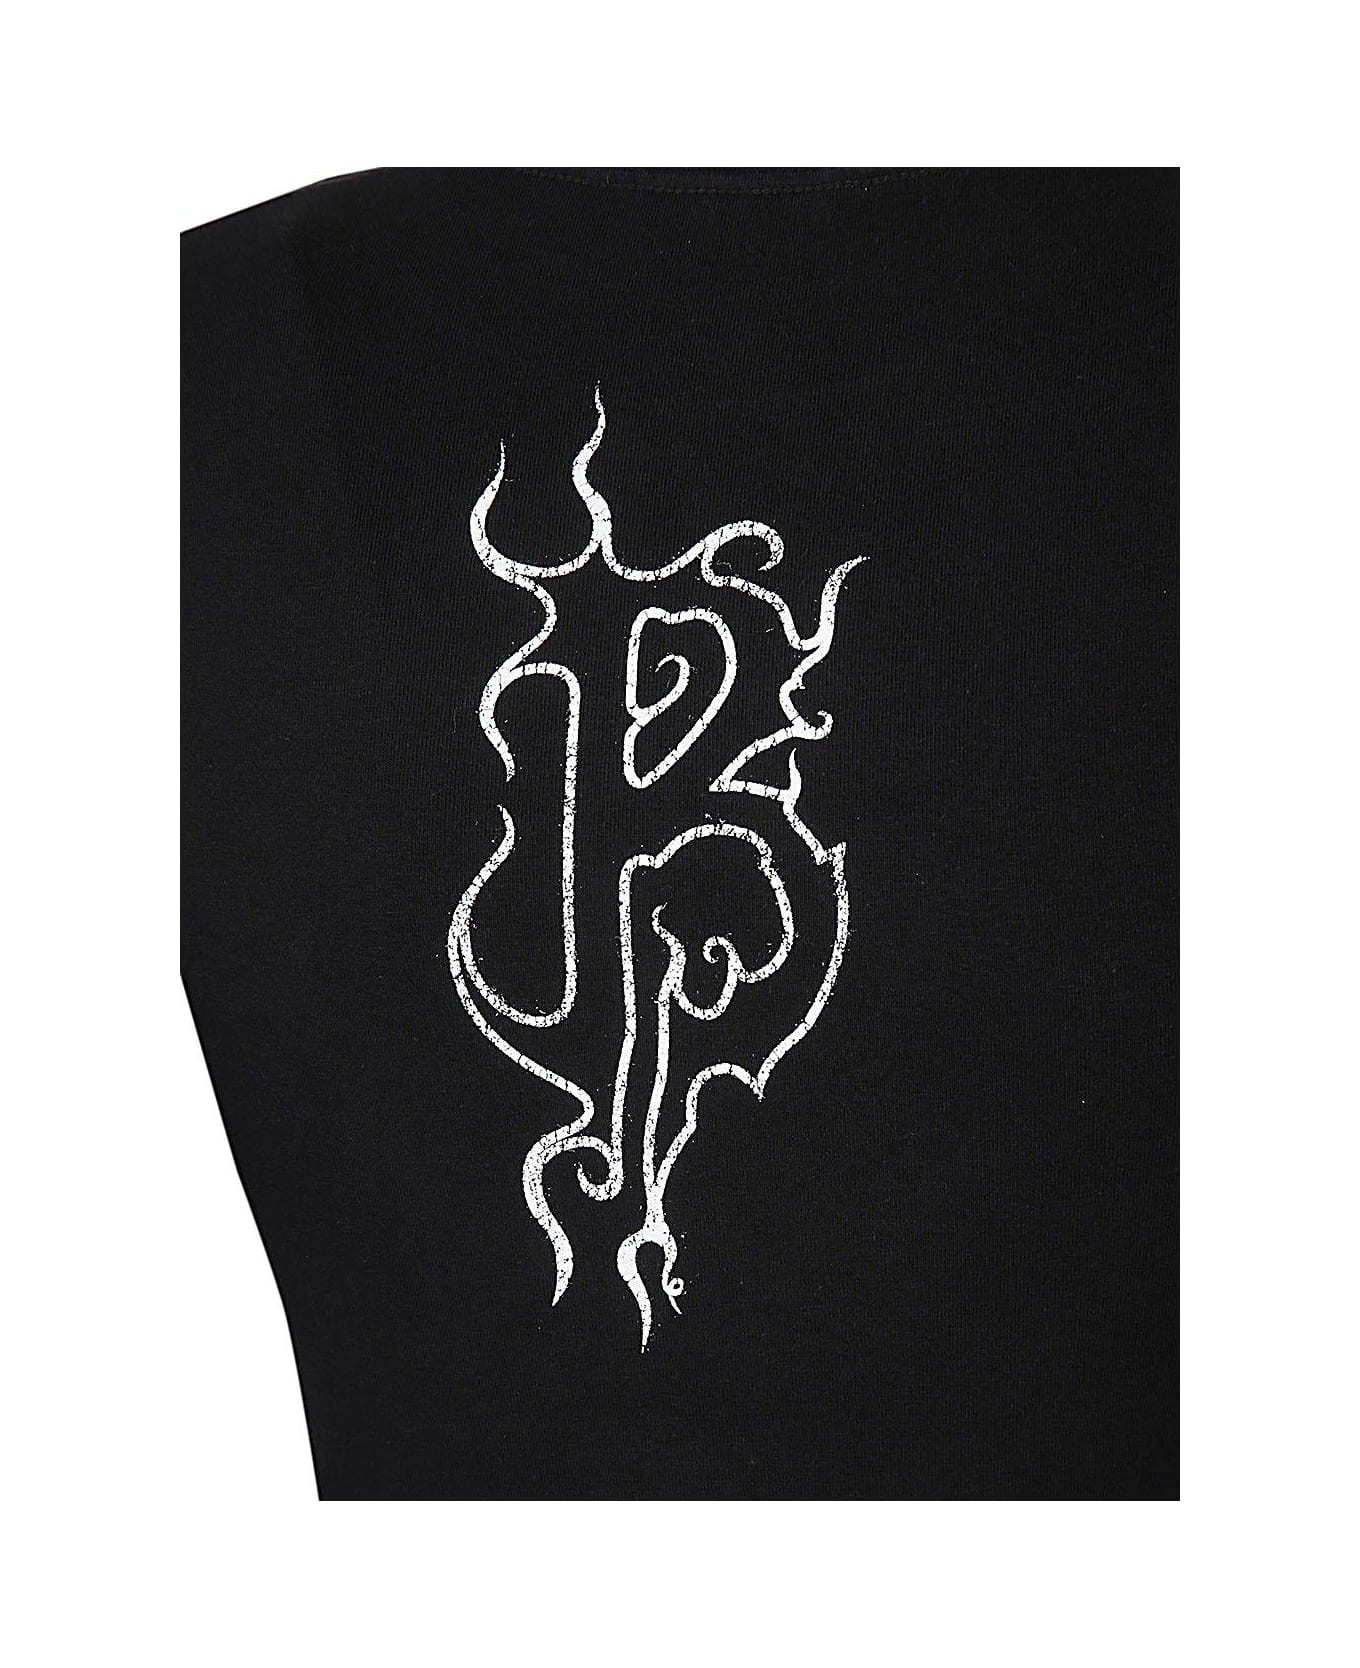 Balenciaga Logo Printed Long-sleeve Top - BLACK